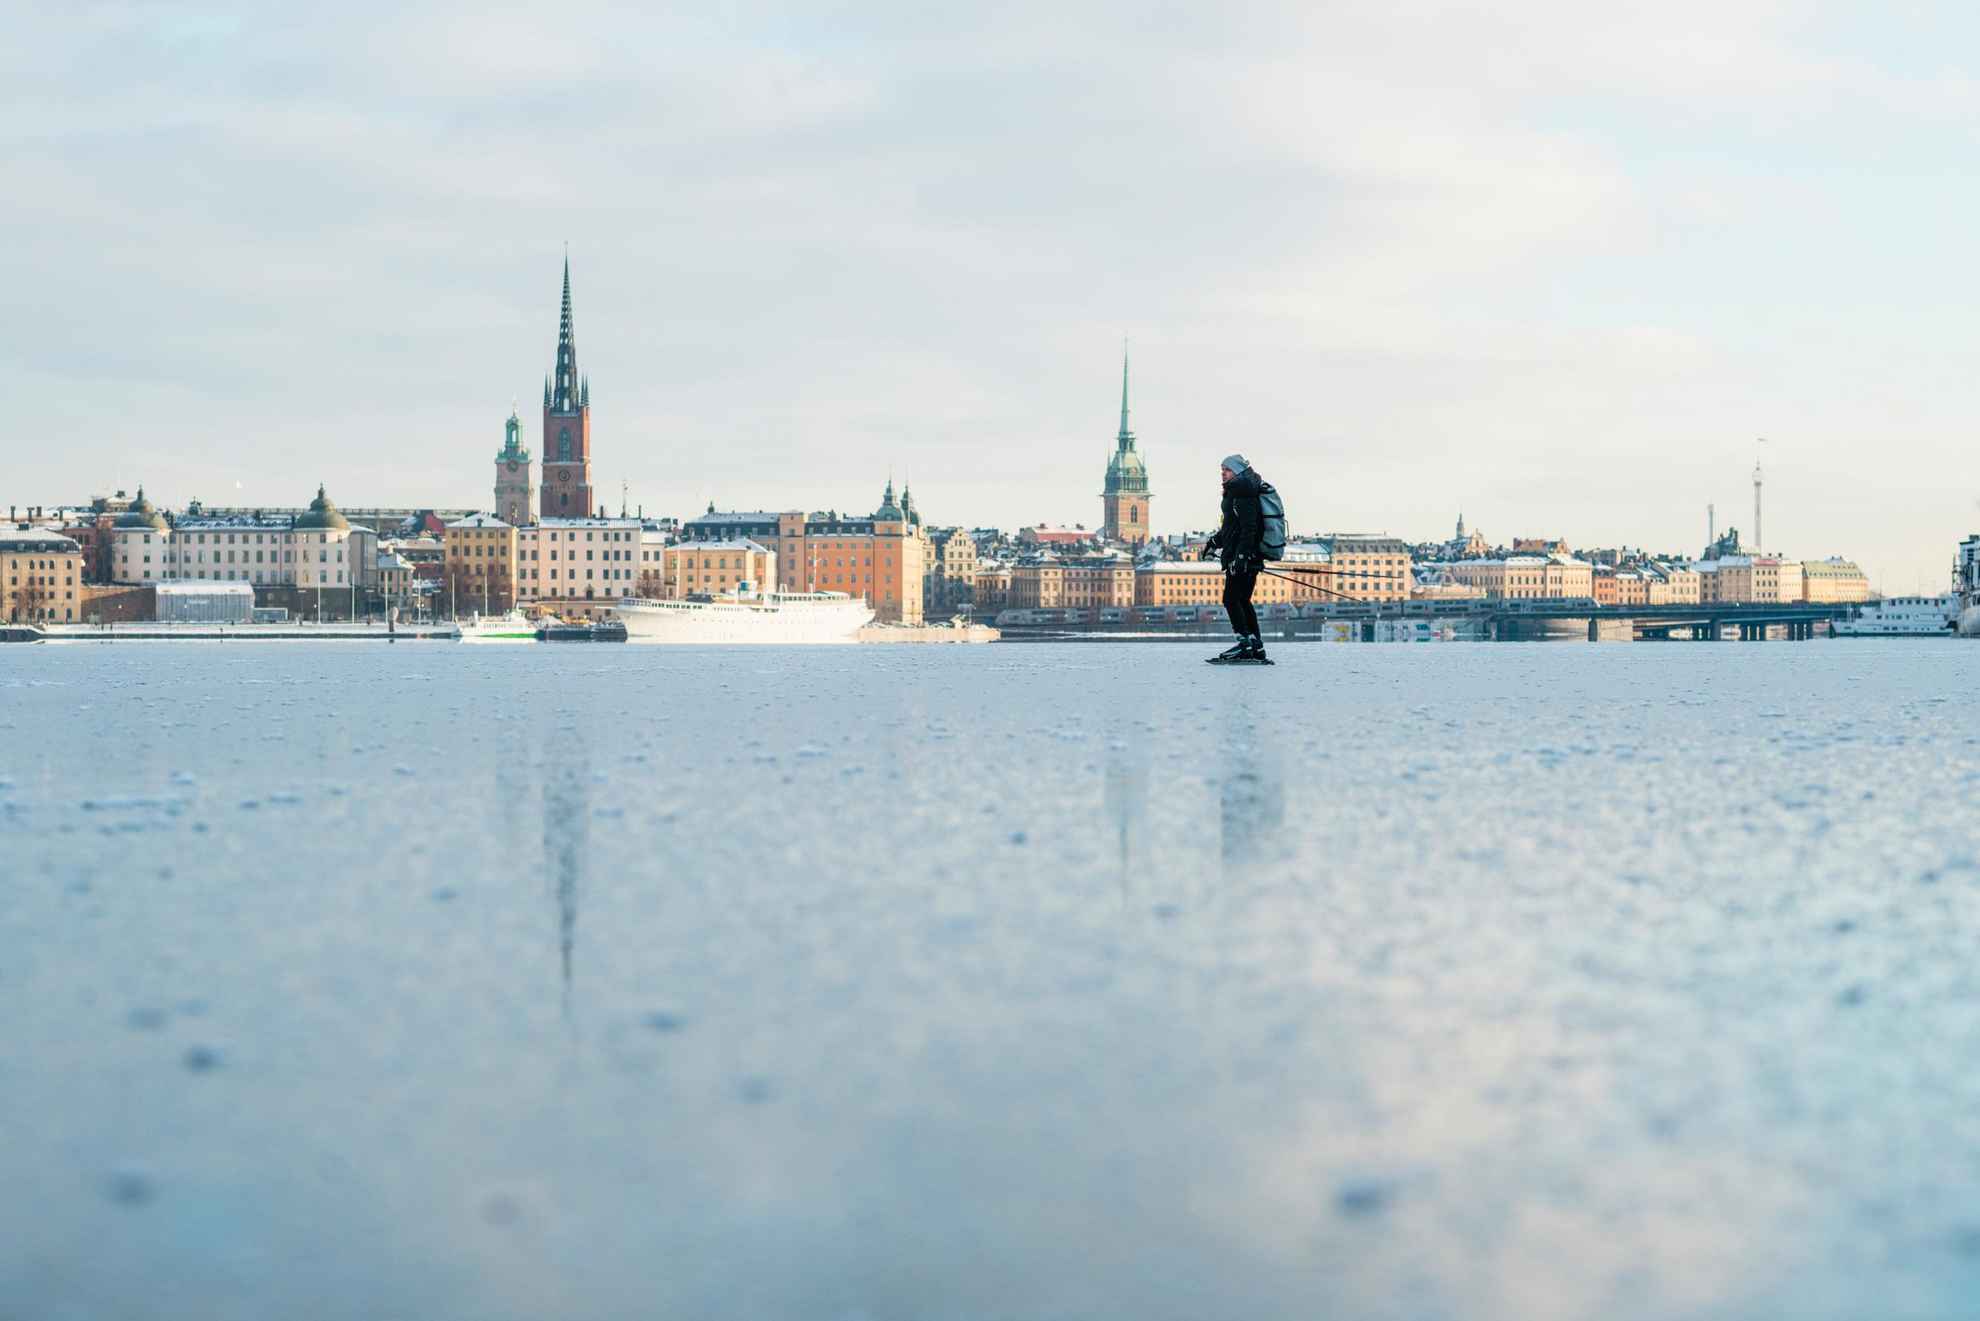 Ice skating in central Stockholm